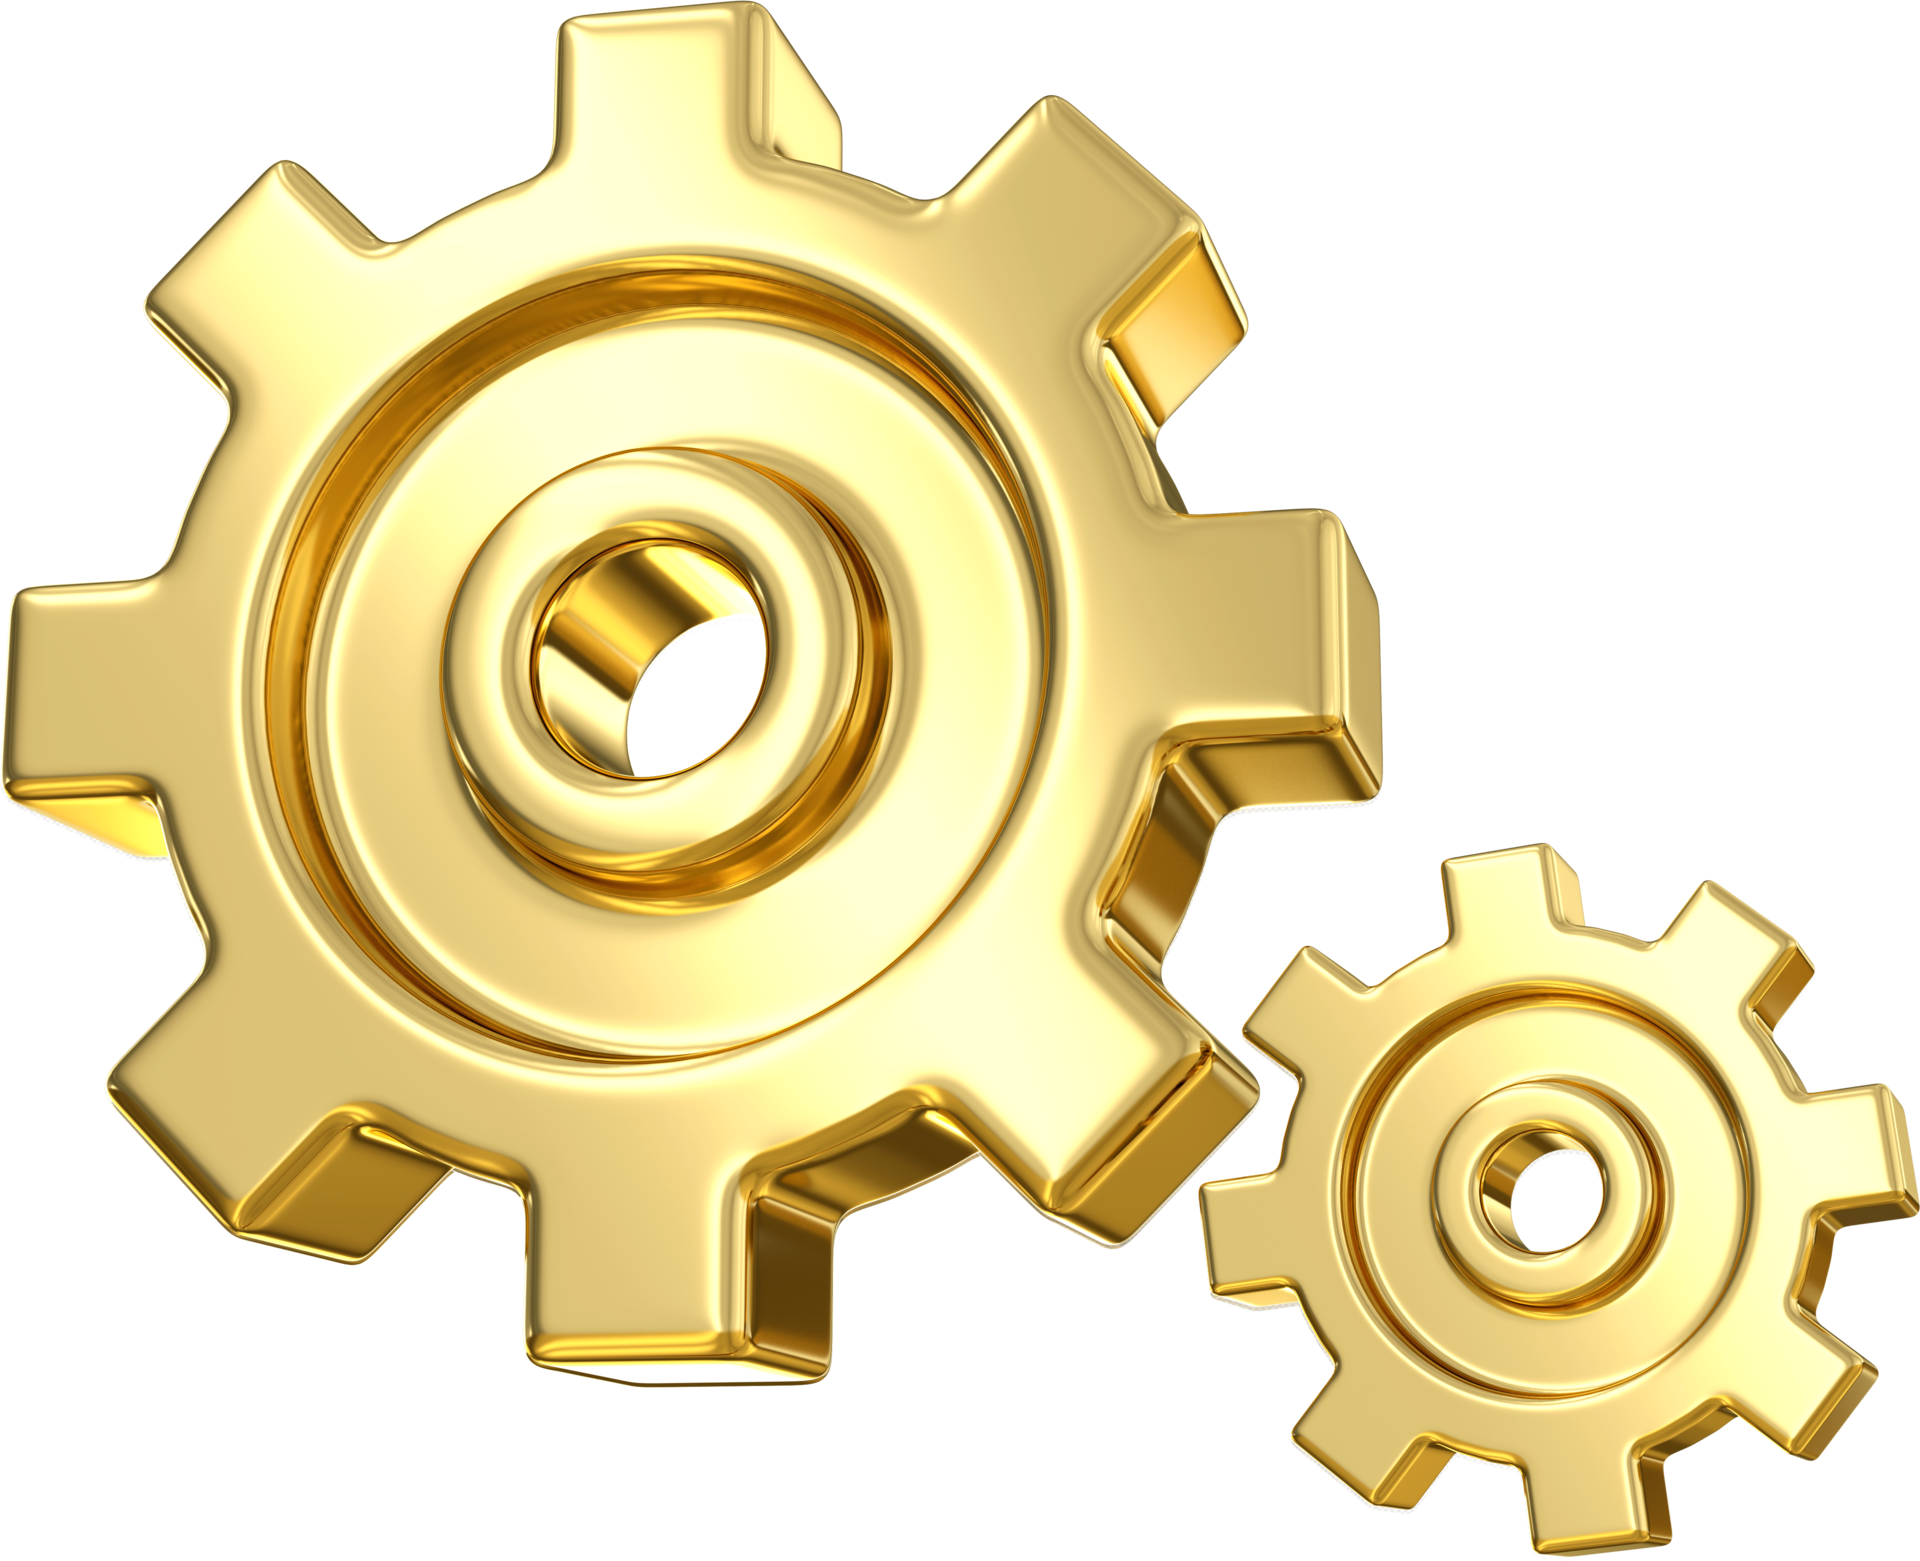 abstrakte Industriedesign mit einem Metall-Zahnrad-logo